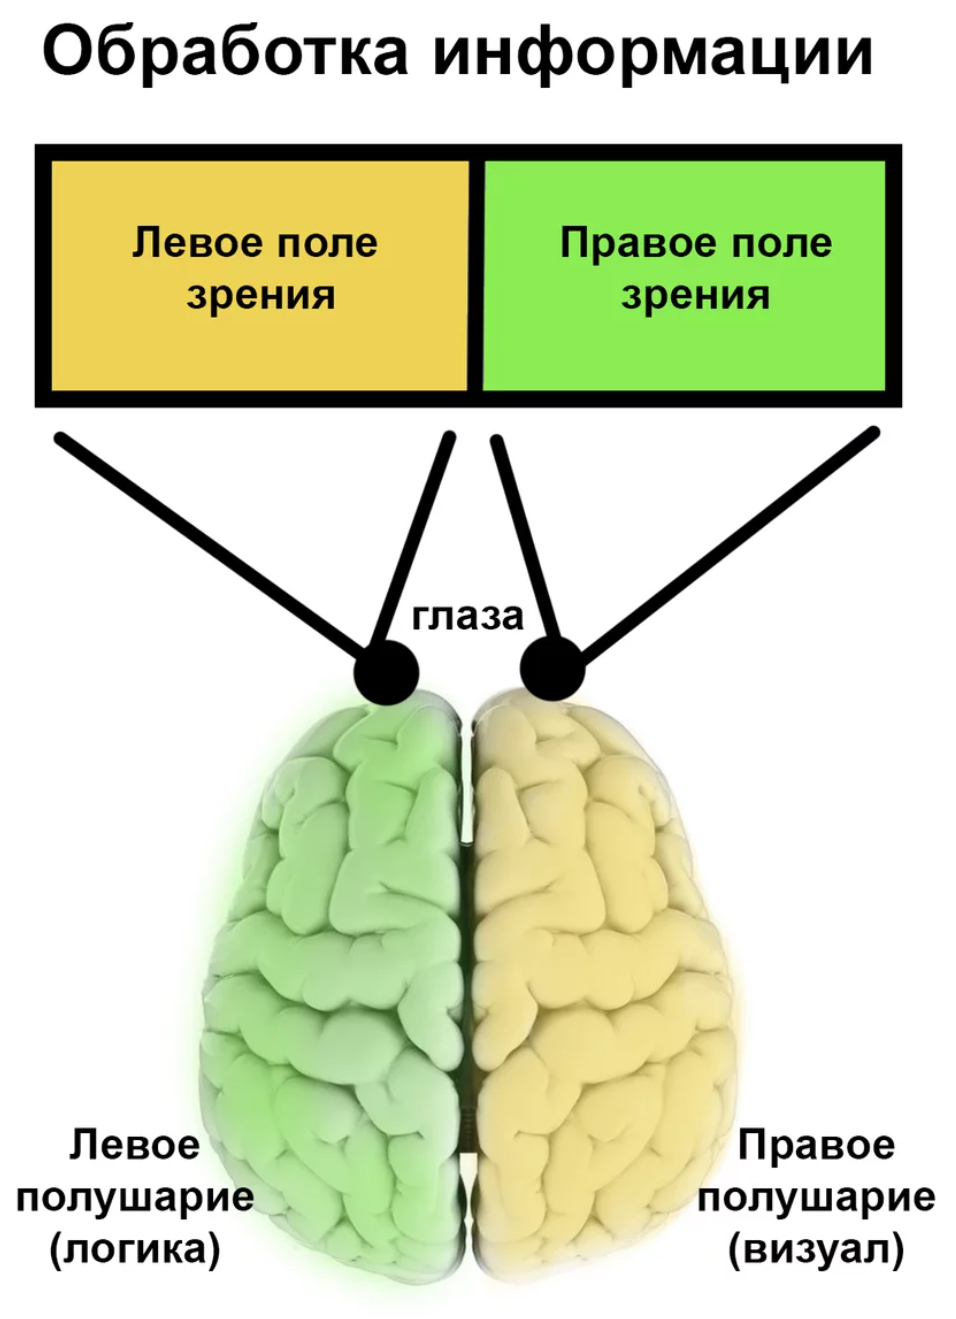 Зрение полушария мозга. Левый глаз правое полушарие. За что отвечает правое полушарие. Левое полушарие. Зрение и полушария мозга.